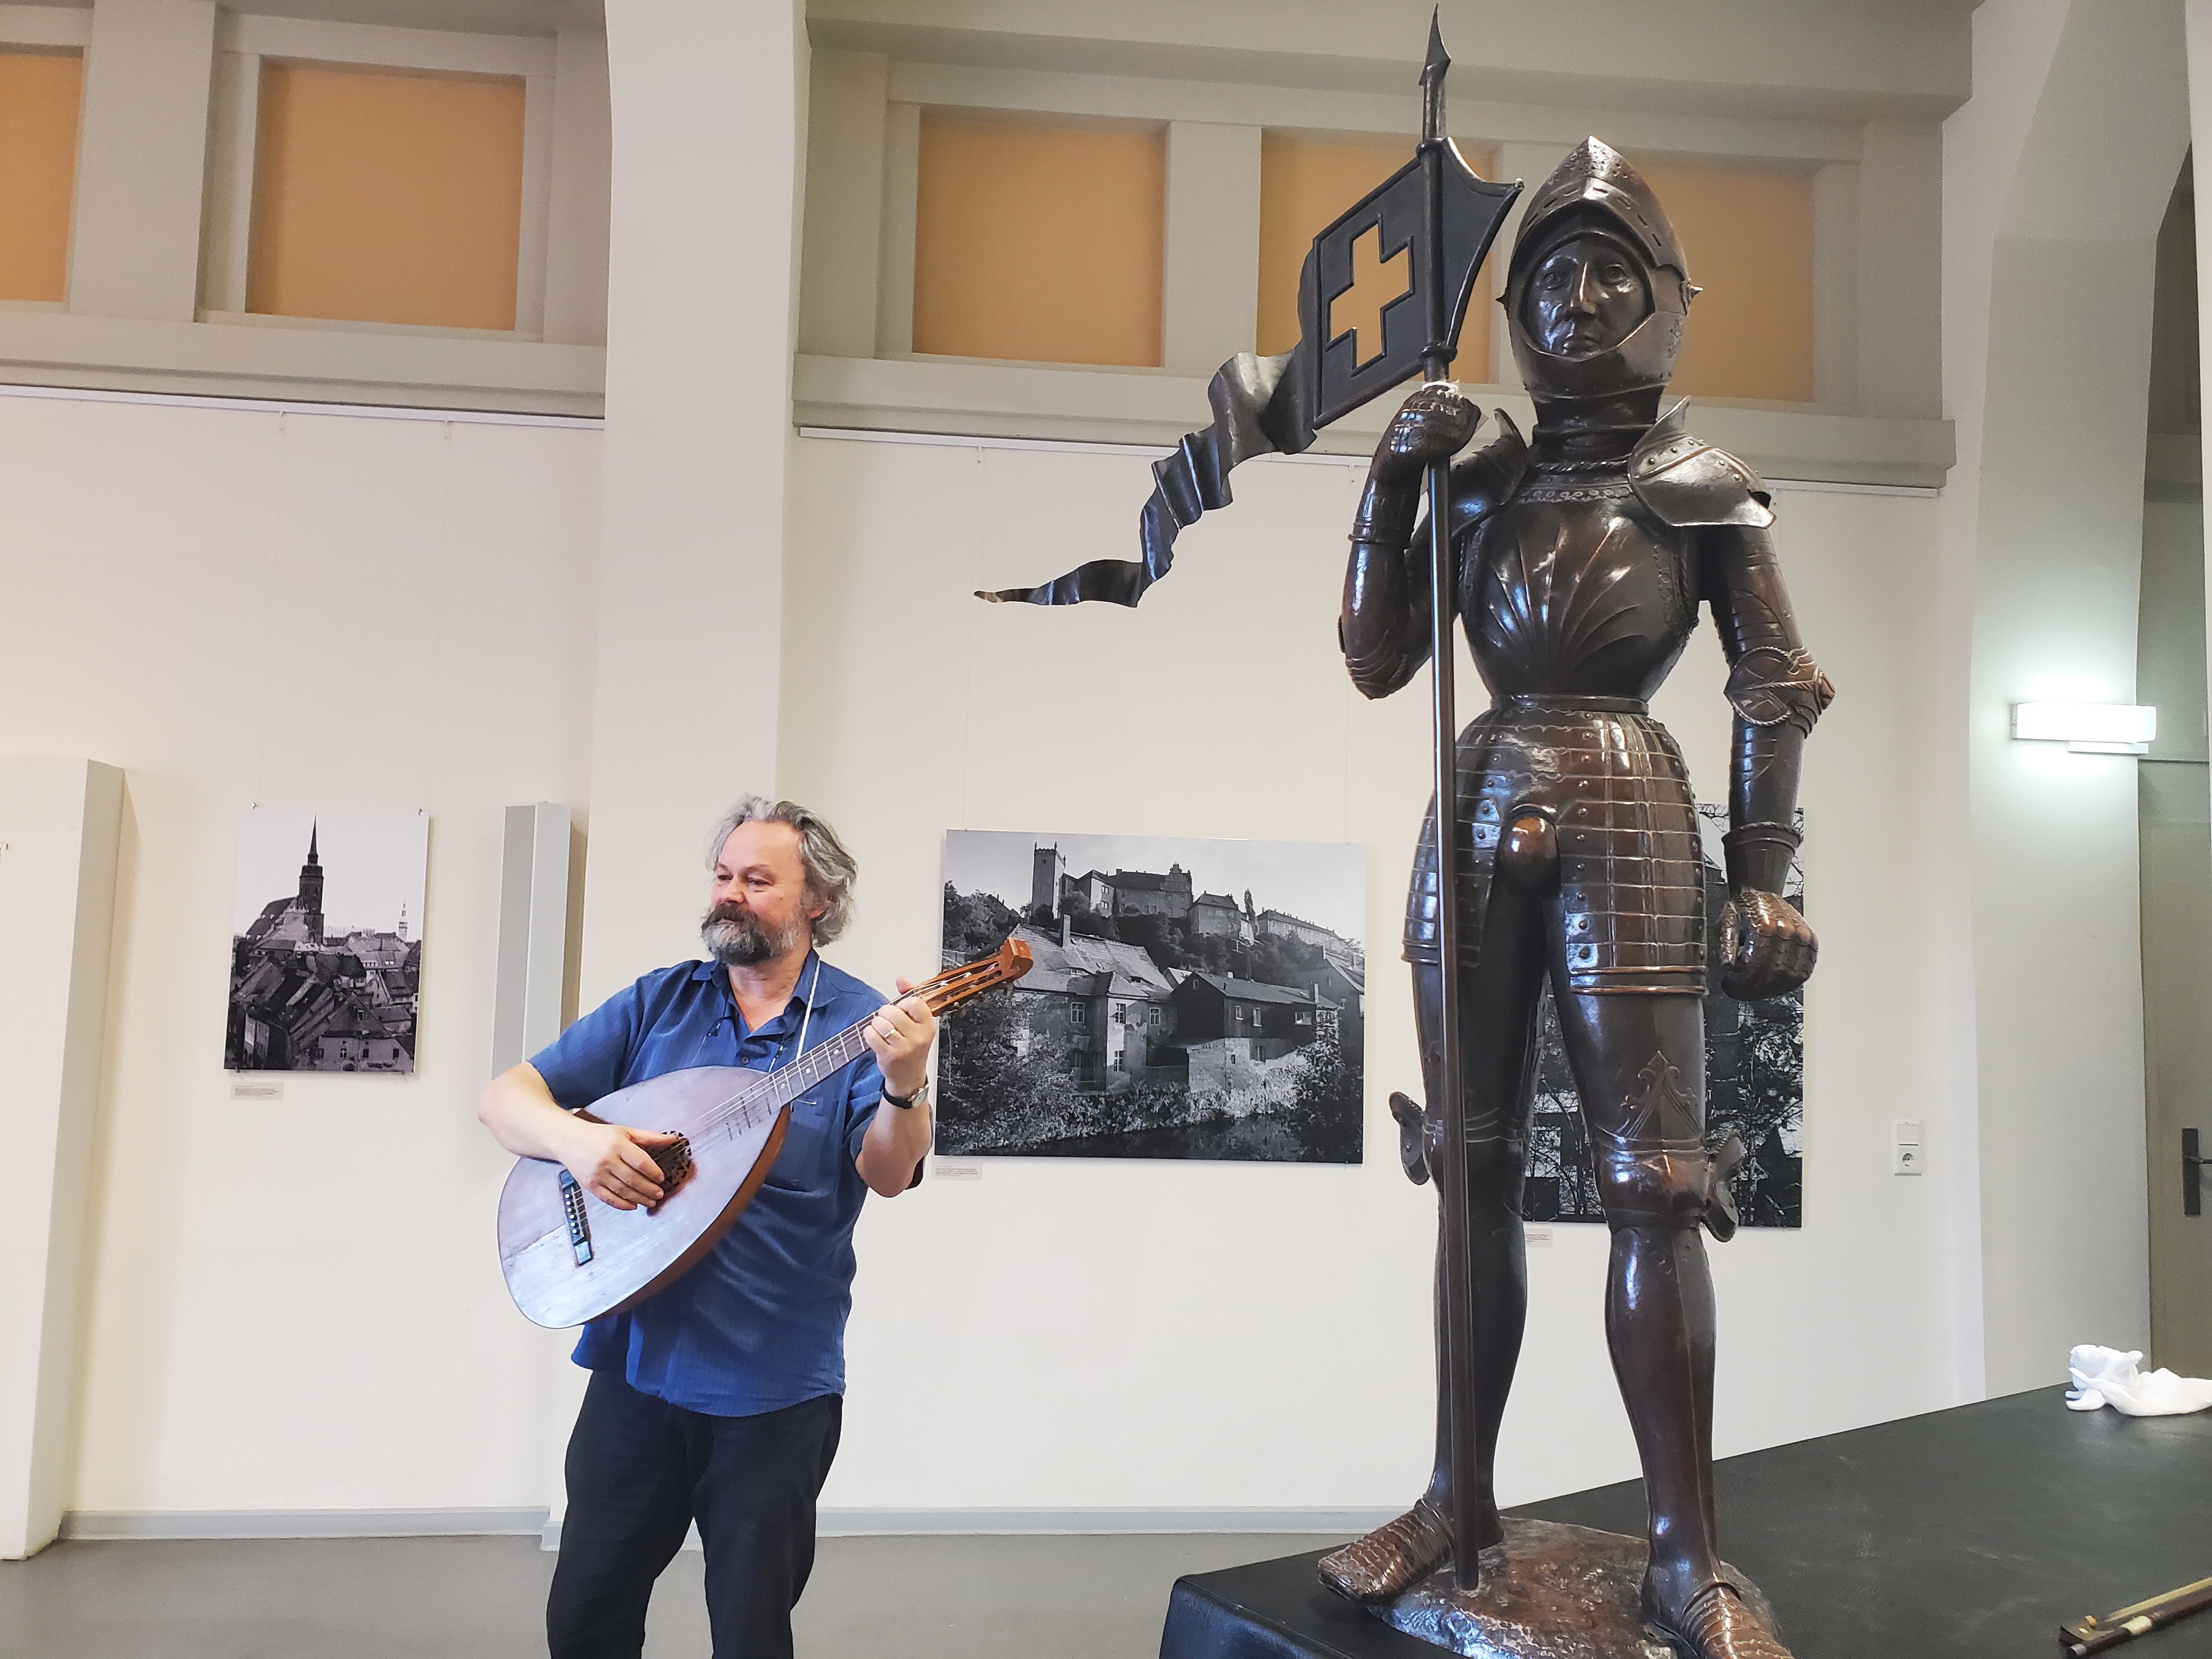 In einen Museumsraum steht auf er linken Seite das Modell eines Ritters, während auf der rechten Seite ein Mann eine Laute spielt.